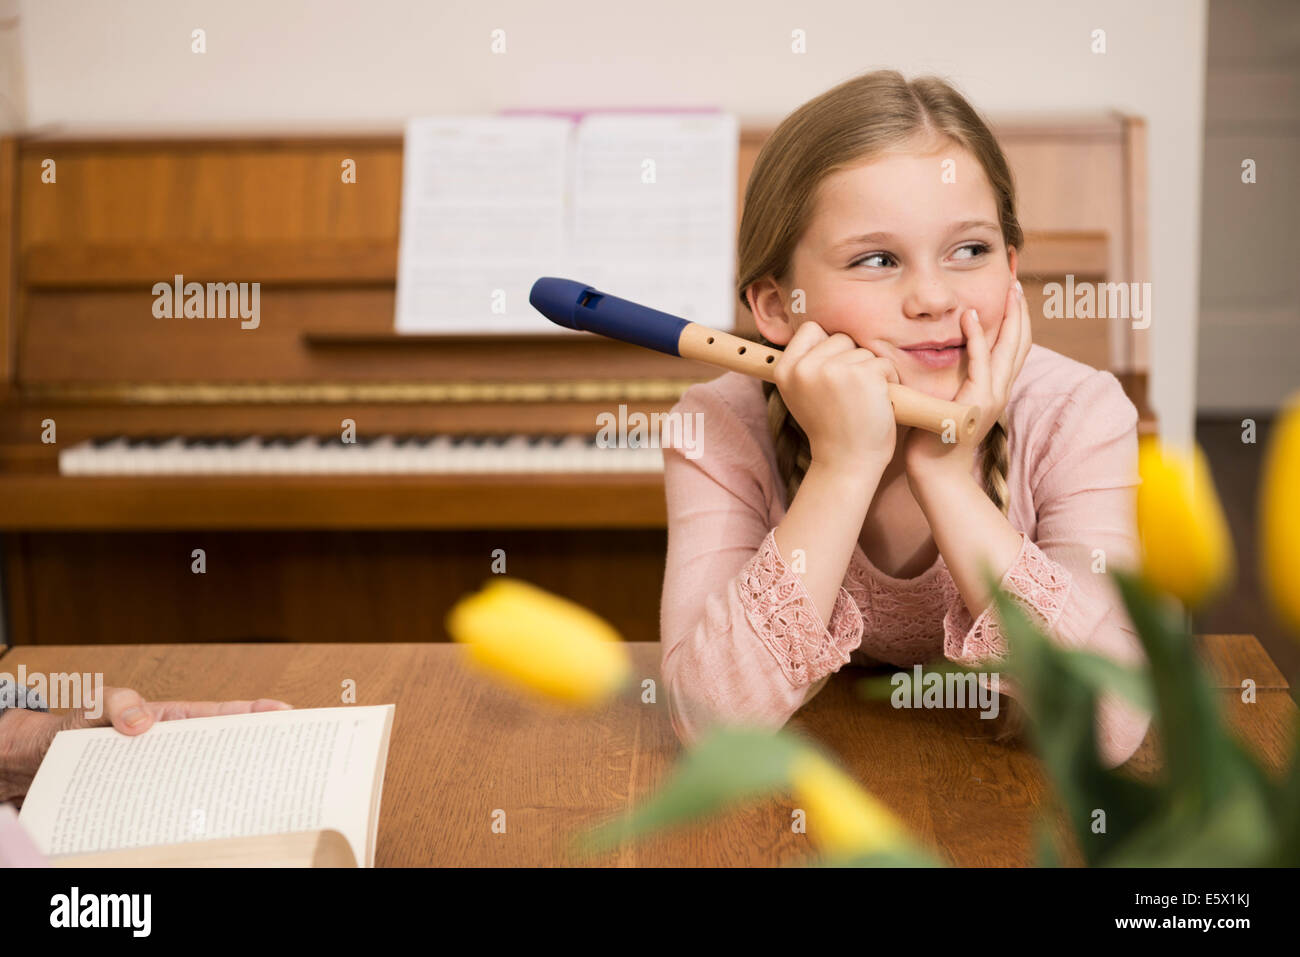 Gelangweilt abgelenkt Mädchen mit Recorder Instrument im Speisesaal Stockfoto